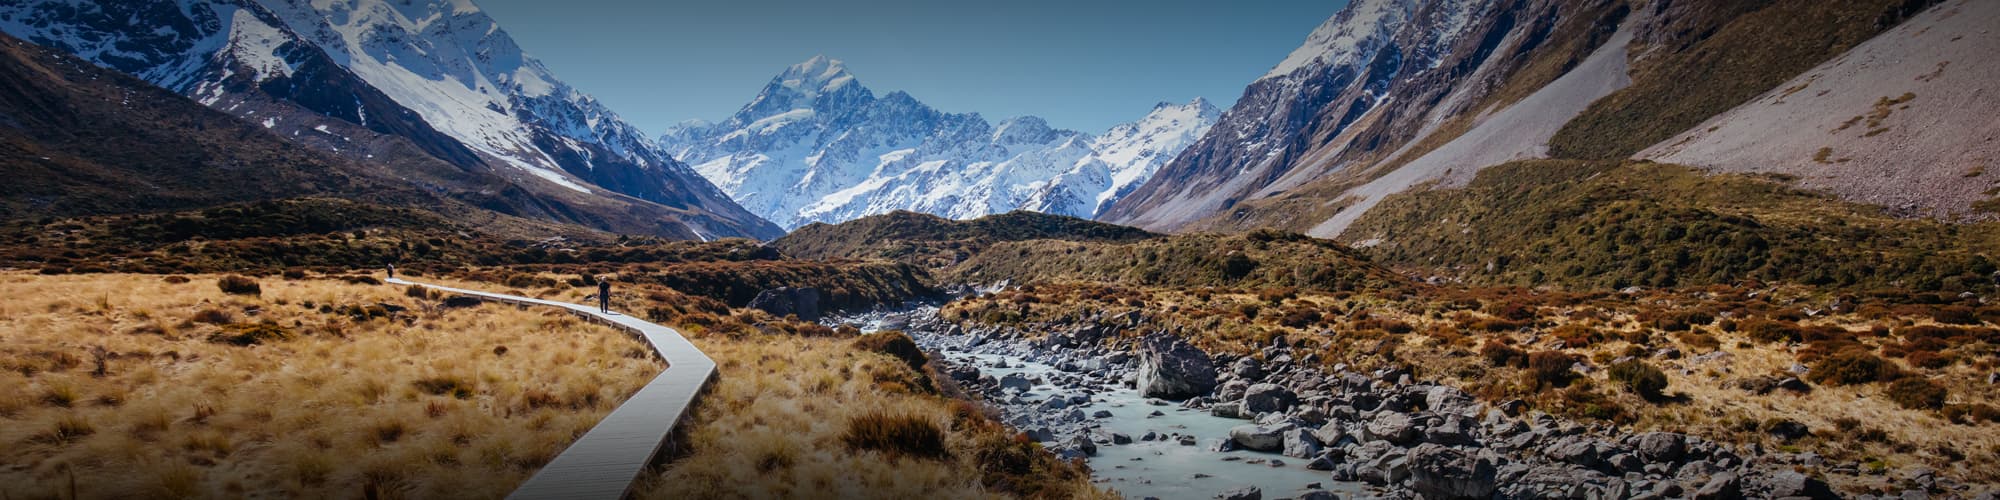 Randonnée en Nouvelle-Zélande : trek, découverte et voyage © Rob Suisted - Tourism New Zealand